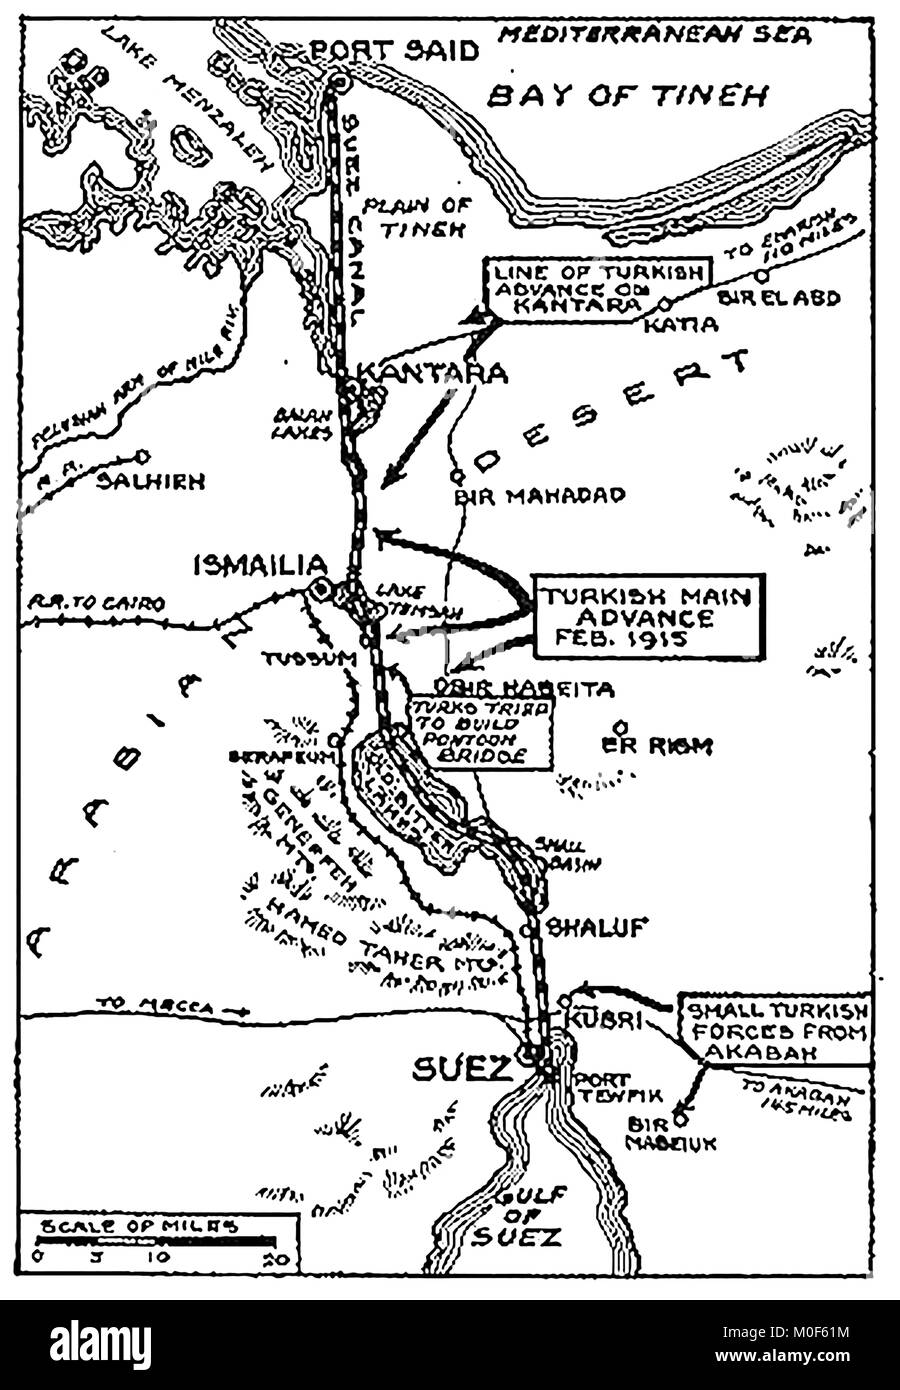 La PREMIÈRE GUERRE MONDIALE - UN 1917 Carte montrant l'activité militaire dans la Première Guerre mondiale 1914-1918 - LA PREMIÈRE GUERRE MONDIALE carte de l'attaque turque sur le Canal de Suez Banque D'Images